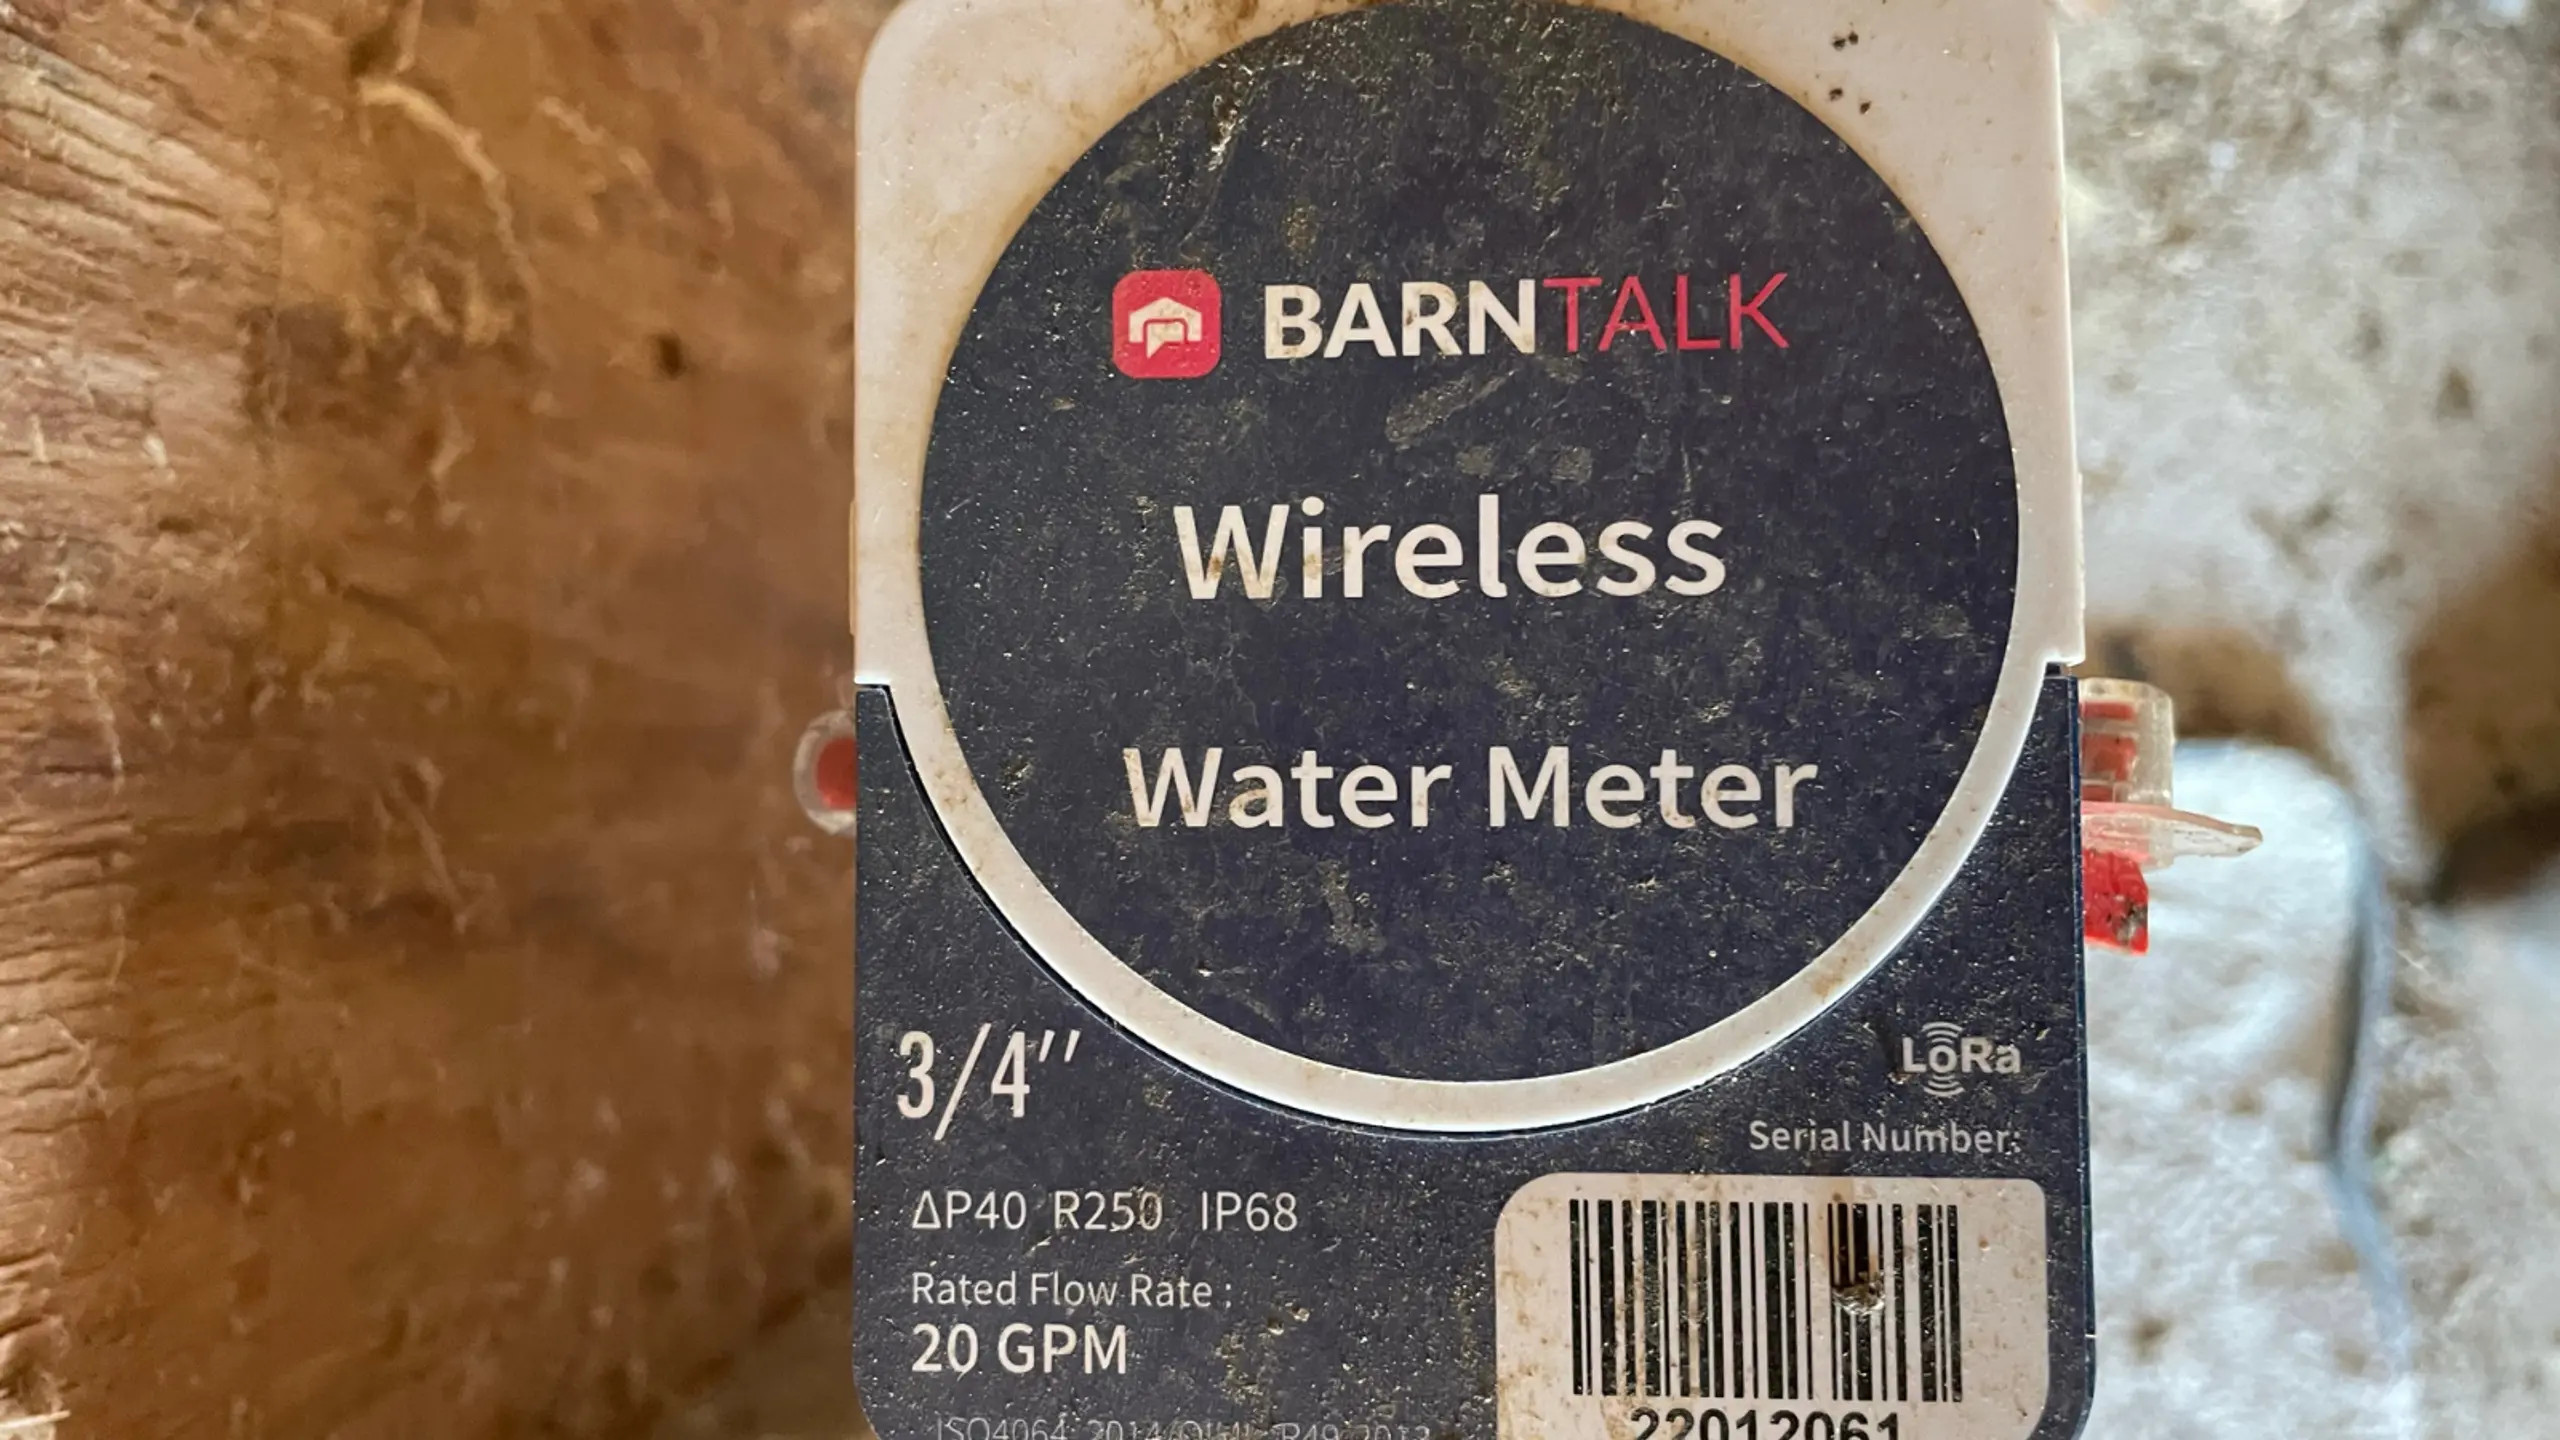 Wireless Water Meter in Barn